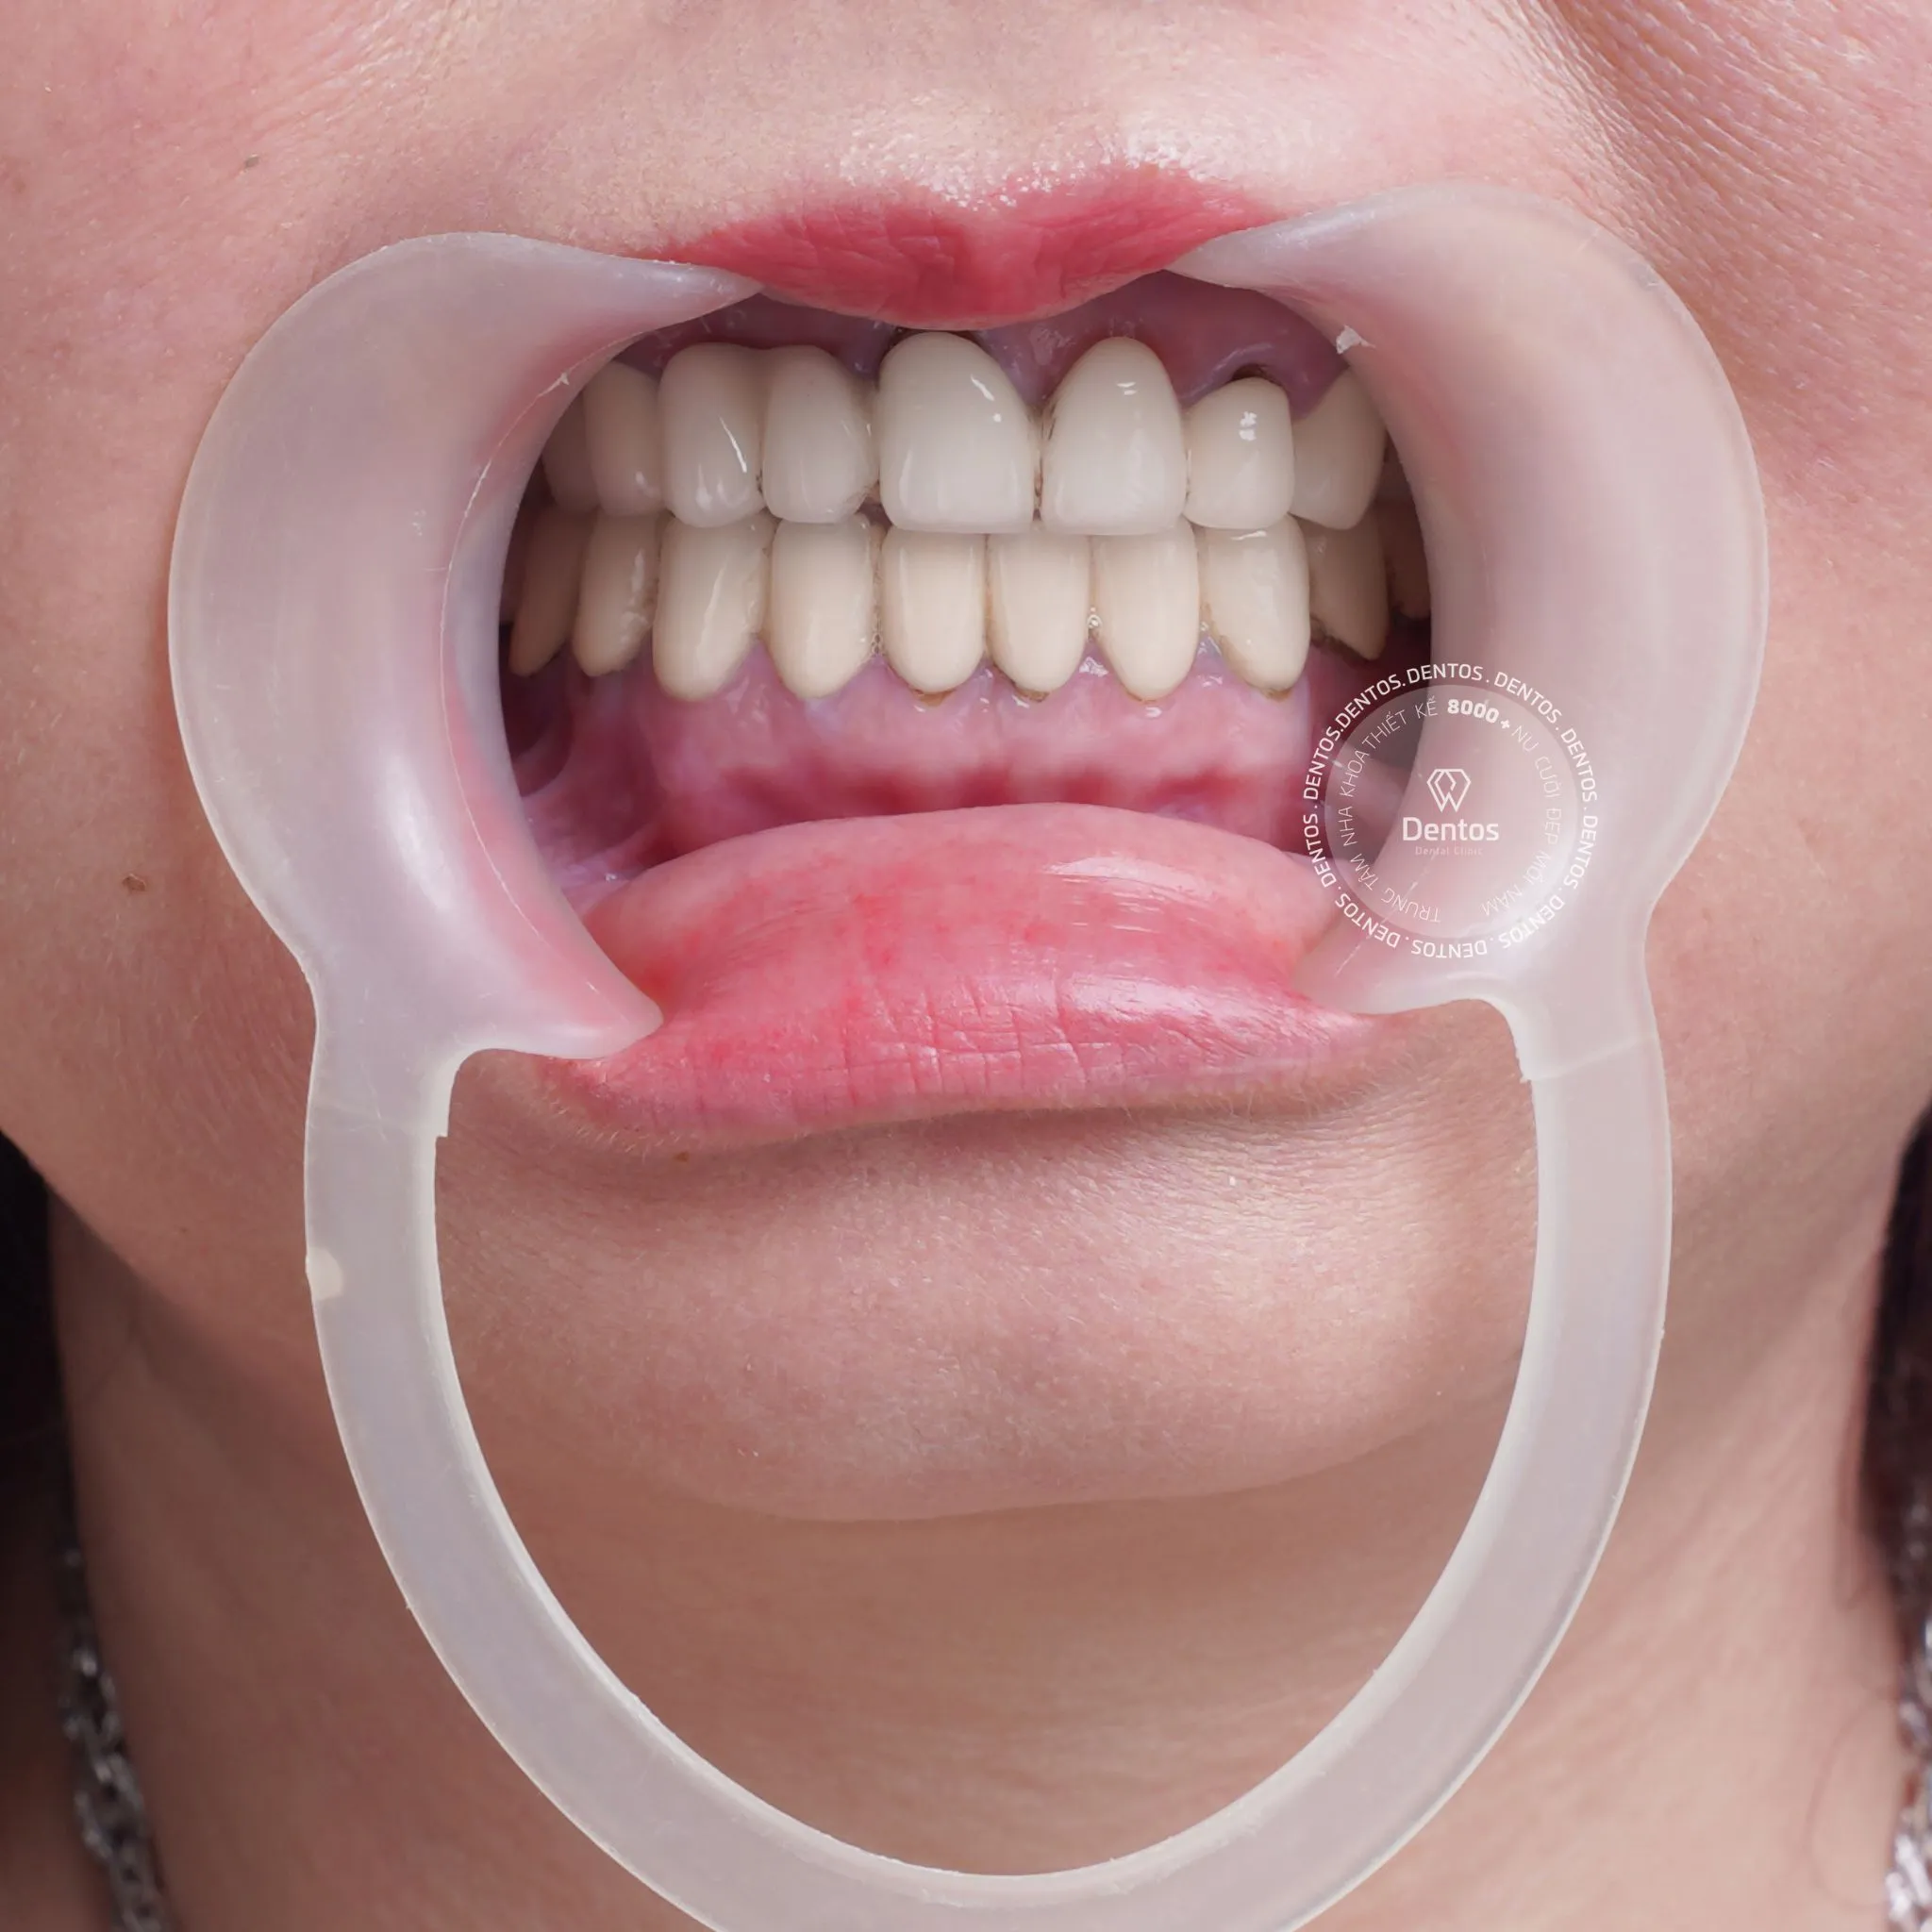 Tình trạng răng miệng quyết định lớn đến giá bọc răng sứ